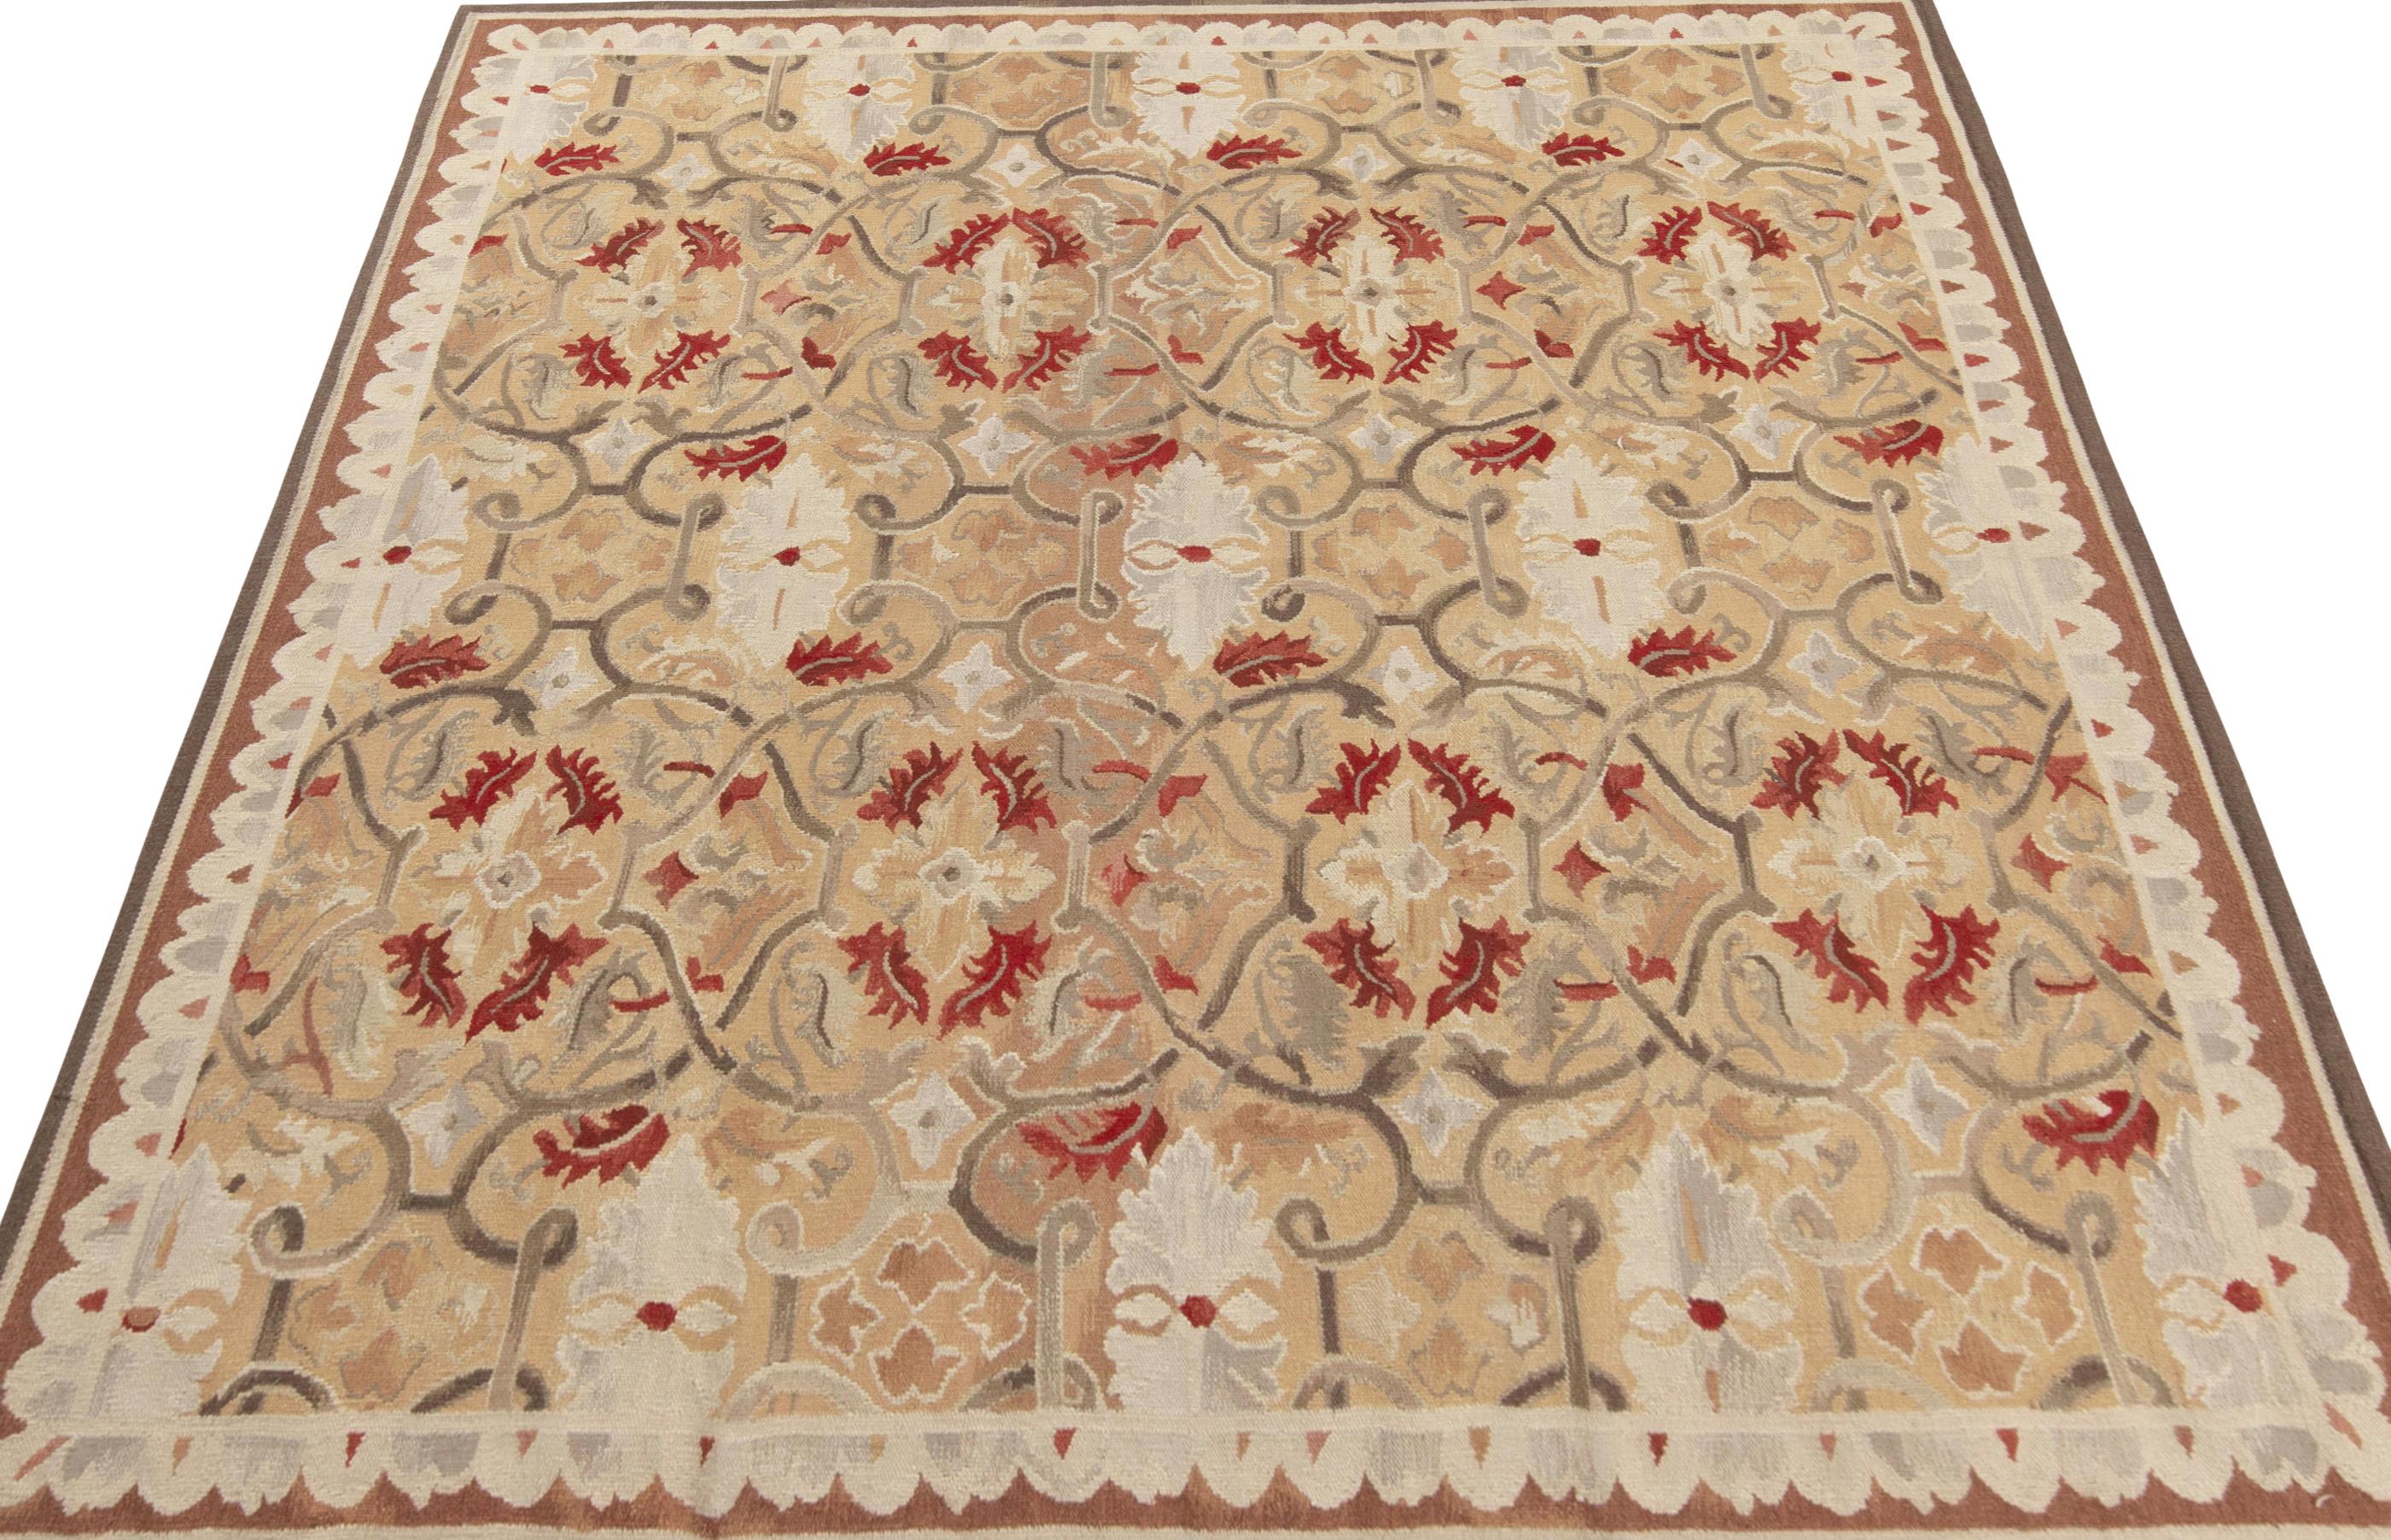 Tissé à la main en laine, un 7x8 célébrant le style de tissage de la tapisserie d'Aubusson du 18ème siècle. Appartenant à la collection de tapis européens de Rug & Kilim, ce tapis présente un motif floral sur tout le pourtour qui fait honneur à